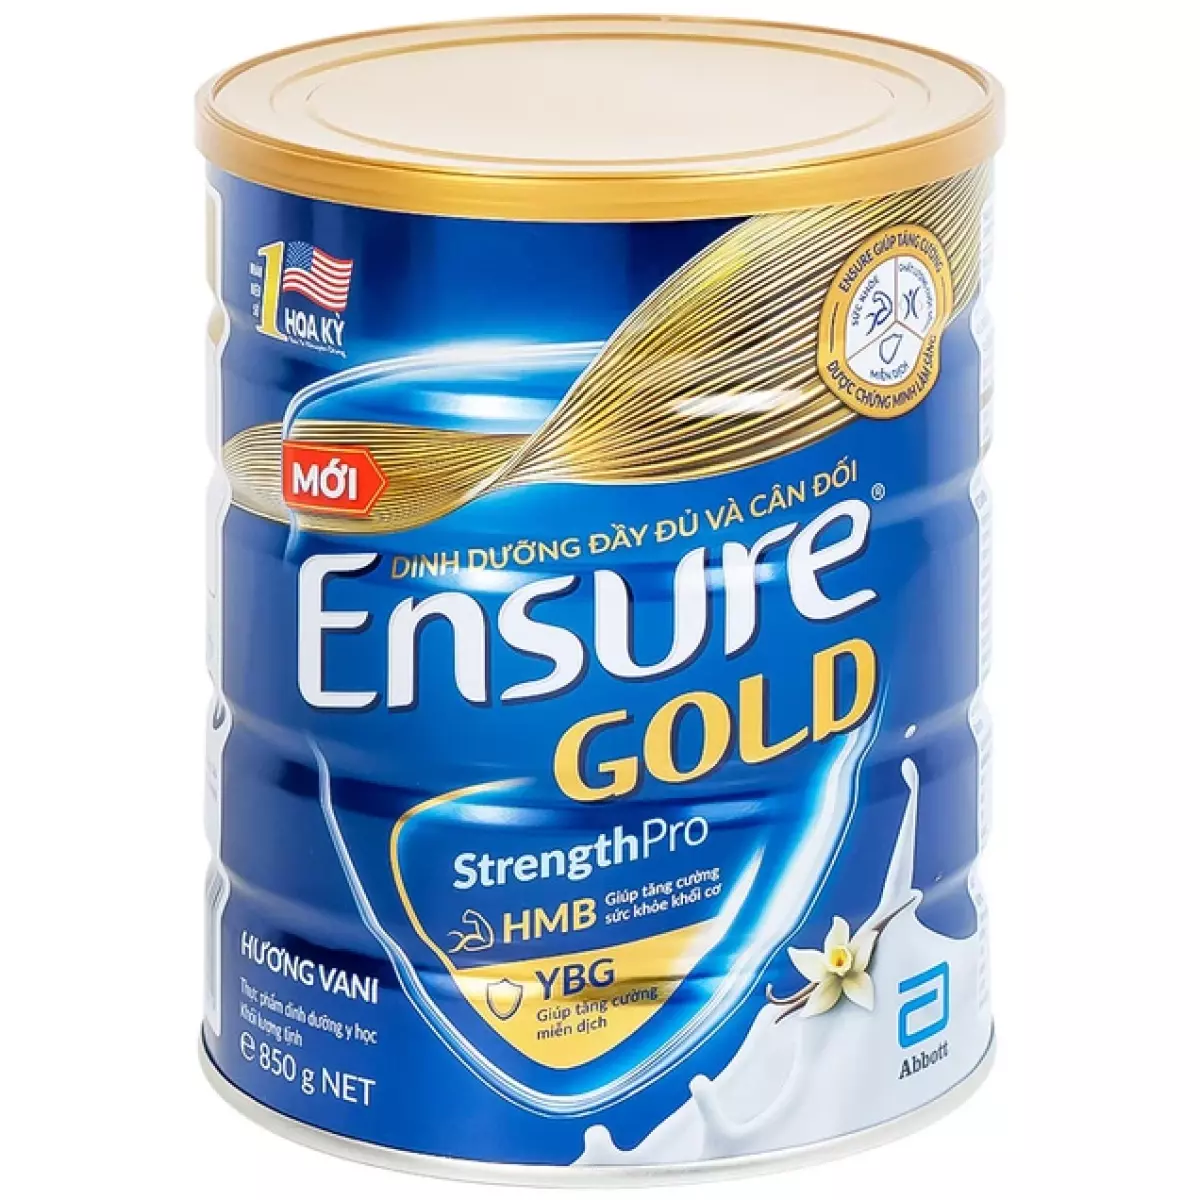 Sữa Abbott Ensure Gold StrengthPro hương Vani phục hồi và tăng cường sức khỏe (850g)